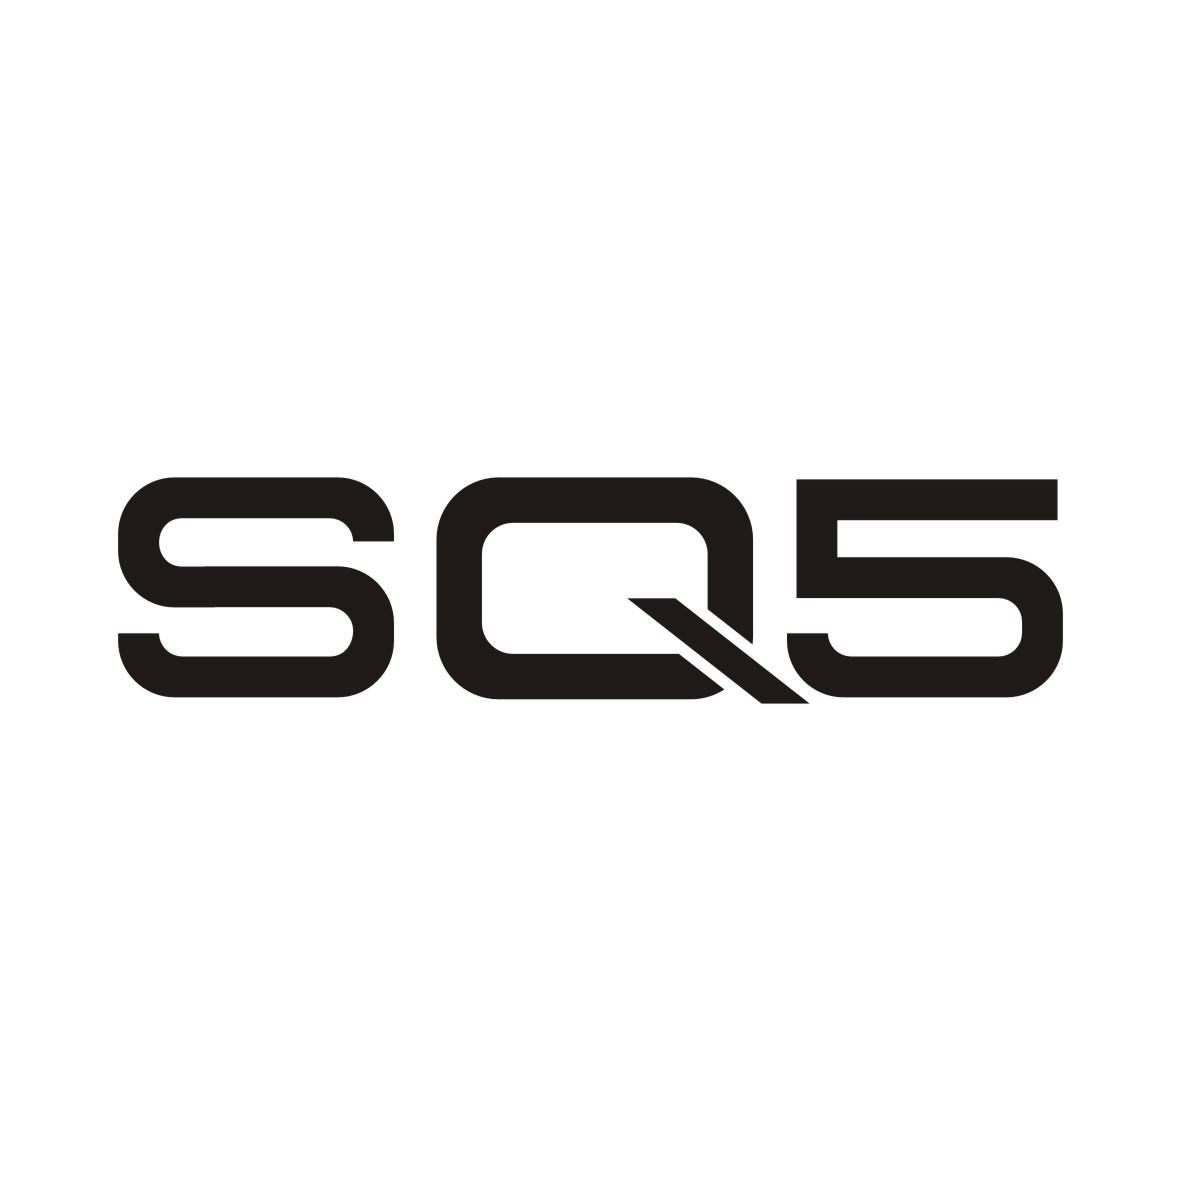 SQ5